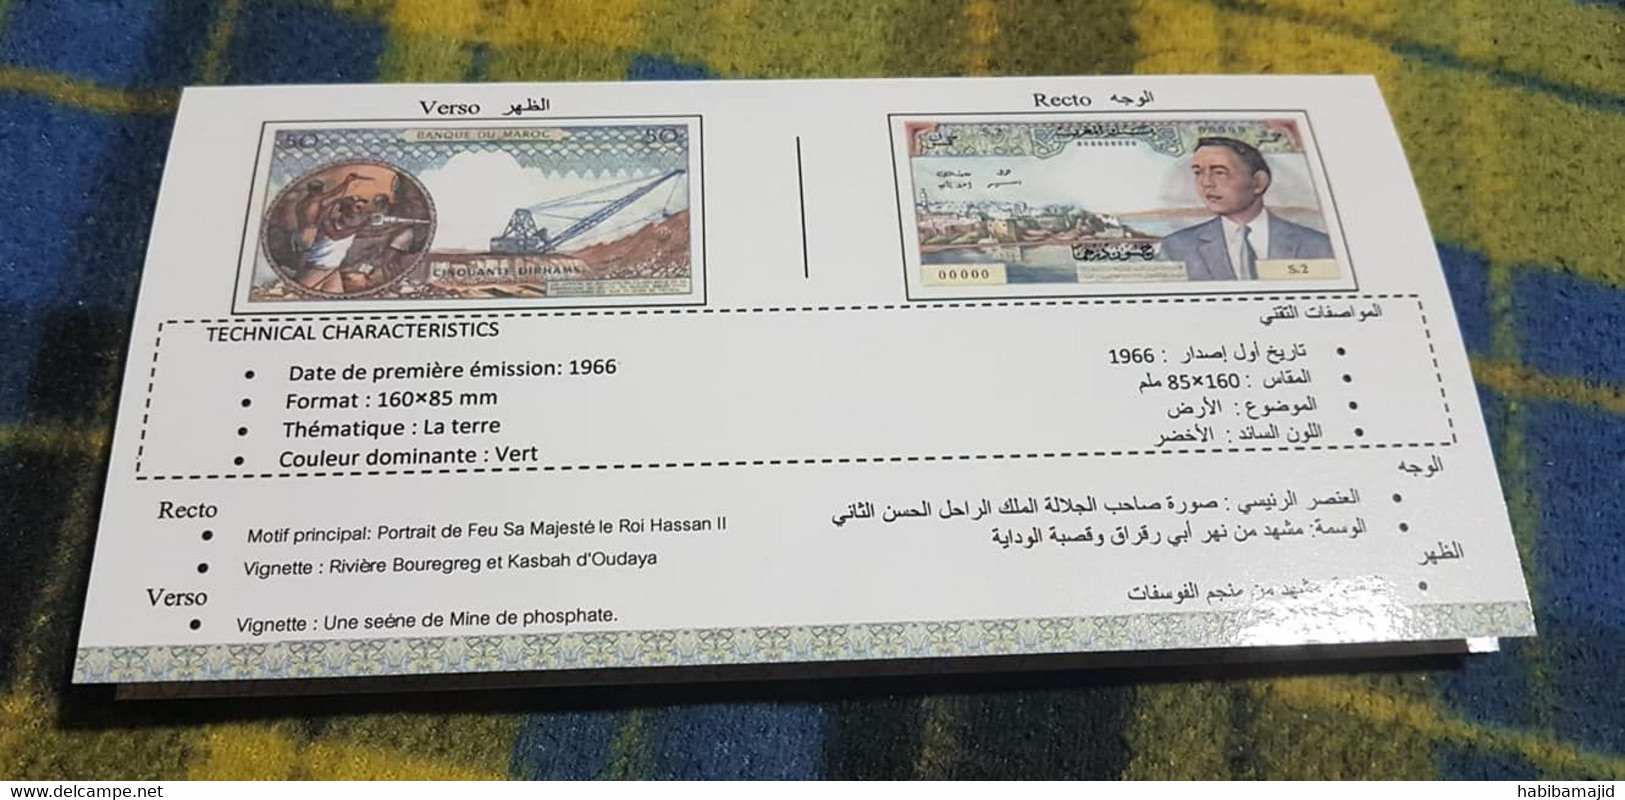 MAROC : Pochette (Vide) En Carton Pour Billet De 50 Dirhams 1968 - Morocco